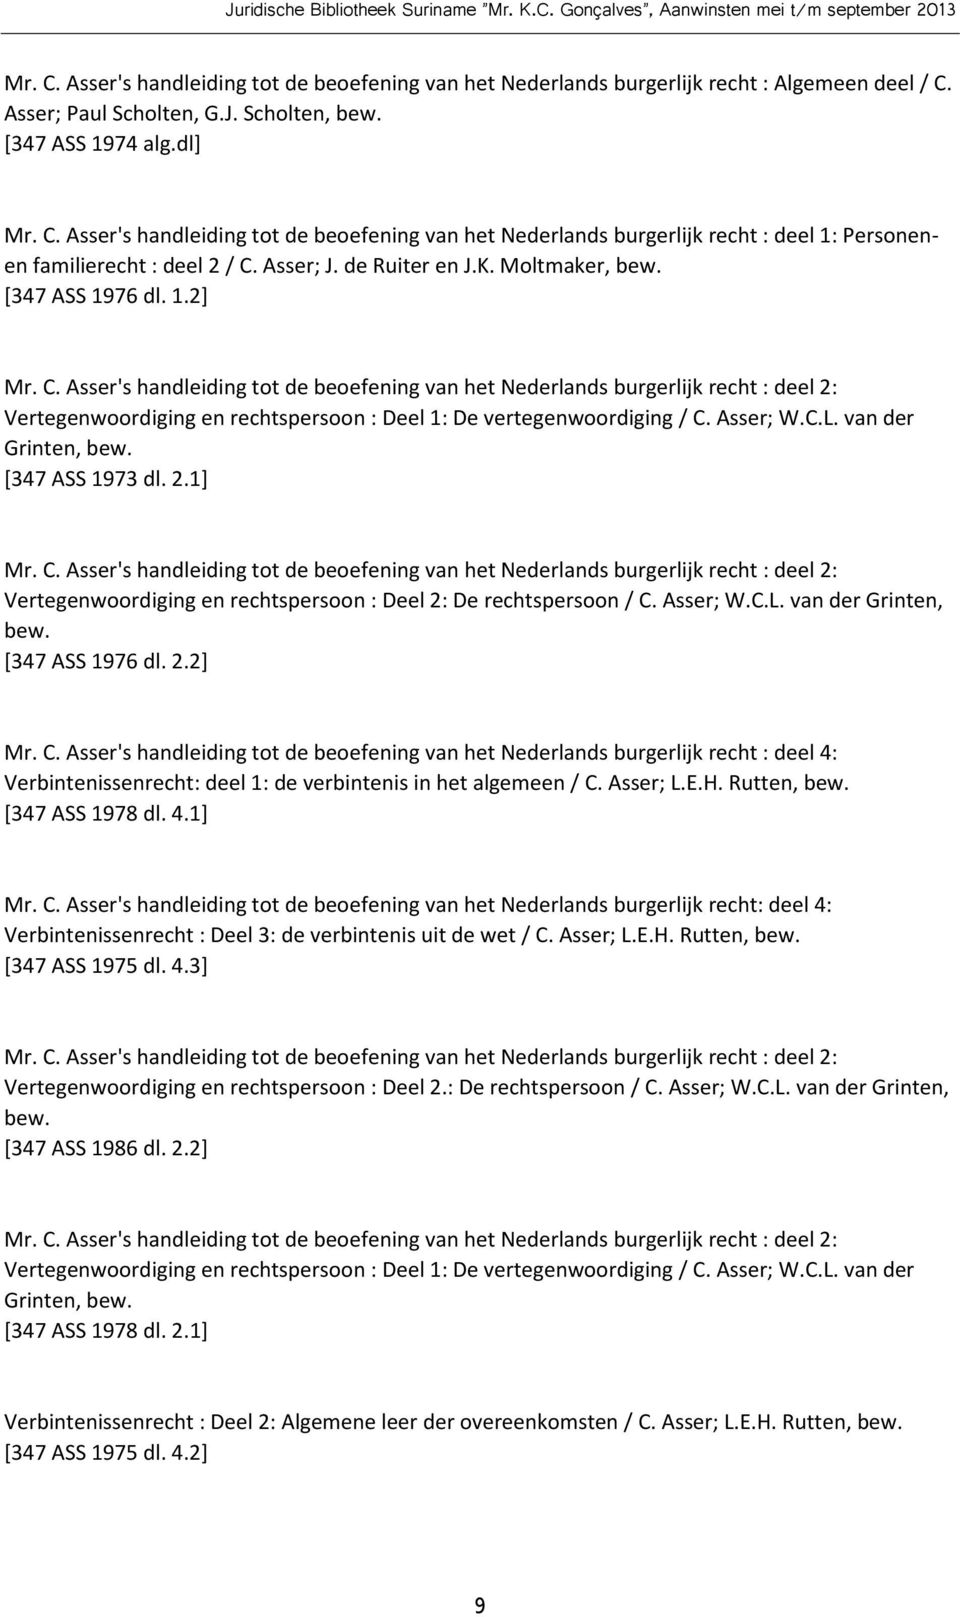 Asser's handleiding tot de beoefening van het Nederlands burgerlijk recht : deel 2: Vertegenwoordiging en rechtspersoon : Deel 1: De vertegenwoordiging / C. Asser; W.C.L. van der Grinten, bew.